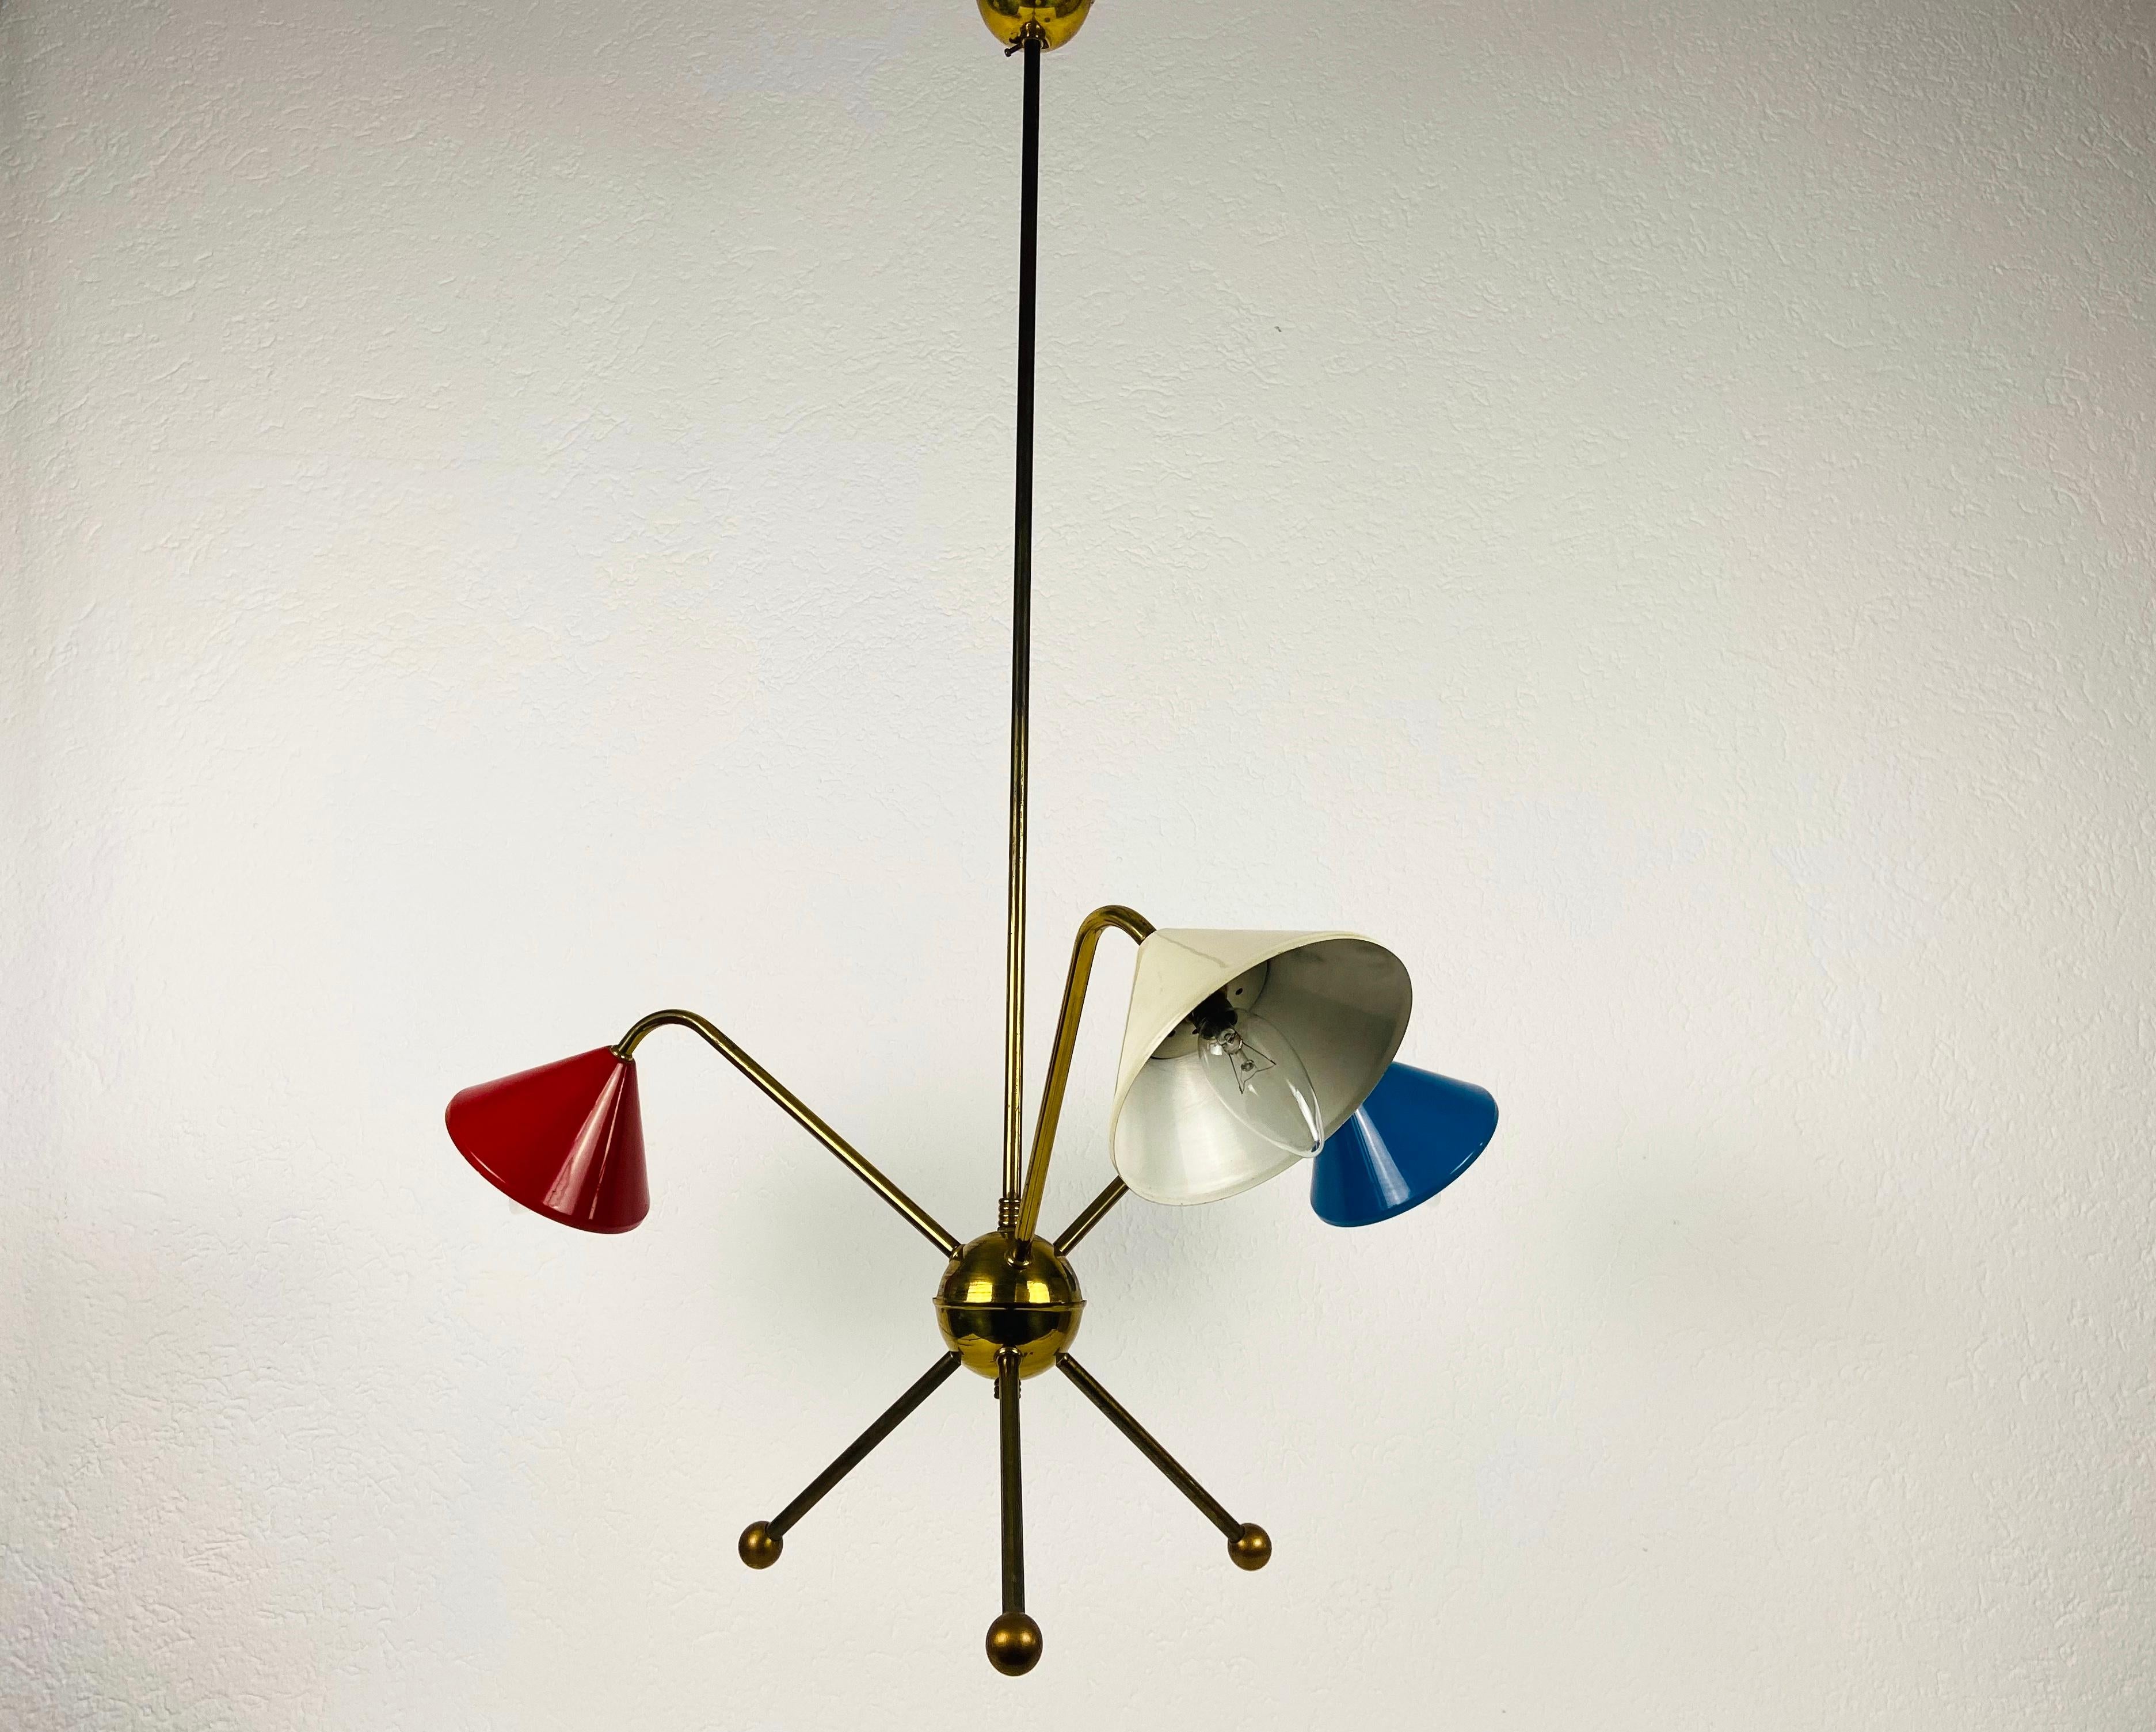 Un lustre Sputnik fabriqué en Italie dans les années 1950 et attribué à Arredoluce. Il est fascinant avec ses trois bras en laiton, chacun d'entre eux portant une ampoule E14. 

Le luminaire nécessite 3 ampoules E14. Bon état vintage. Fonctionne